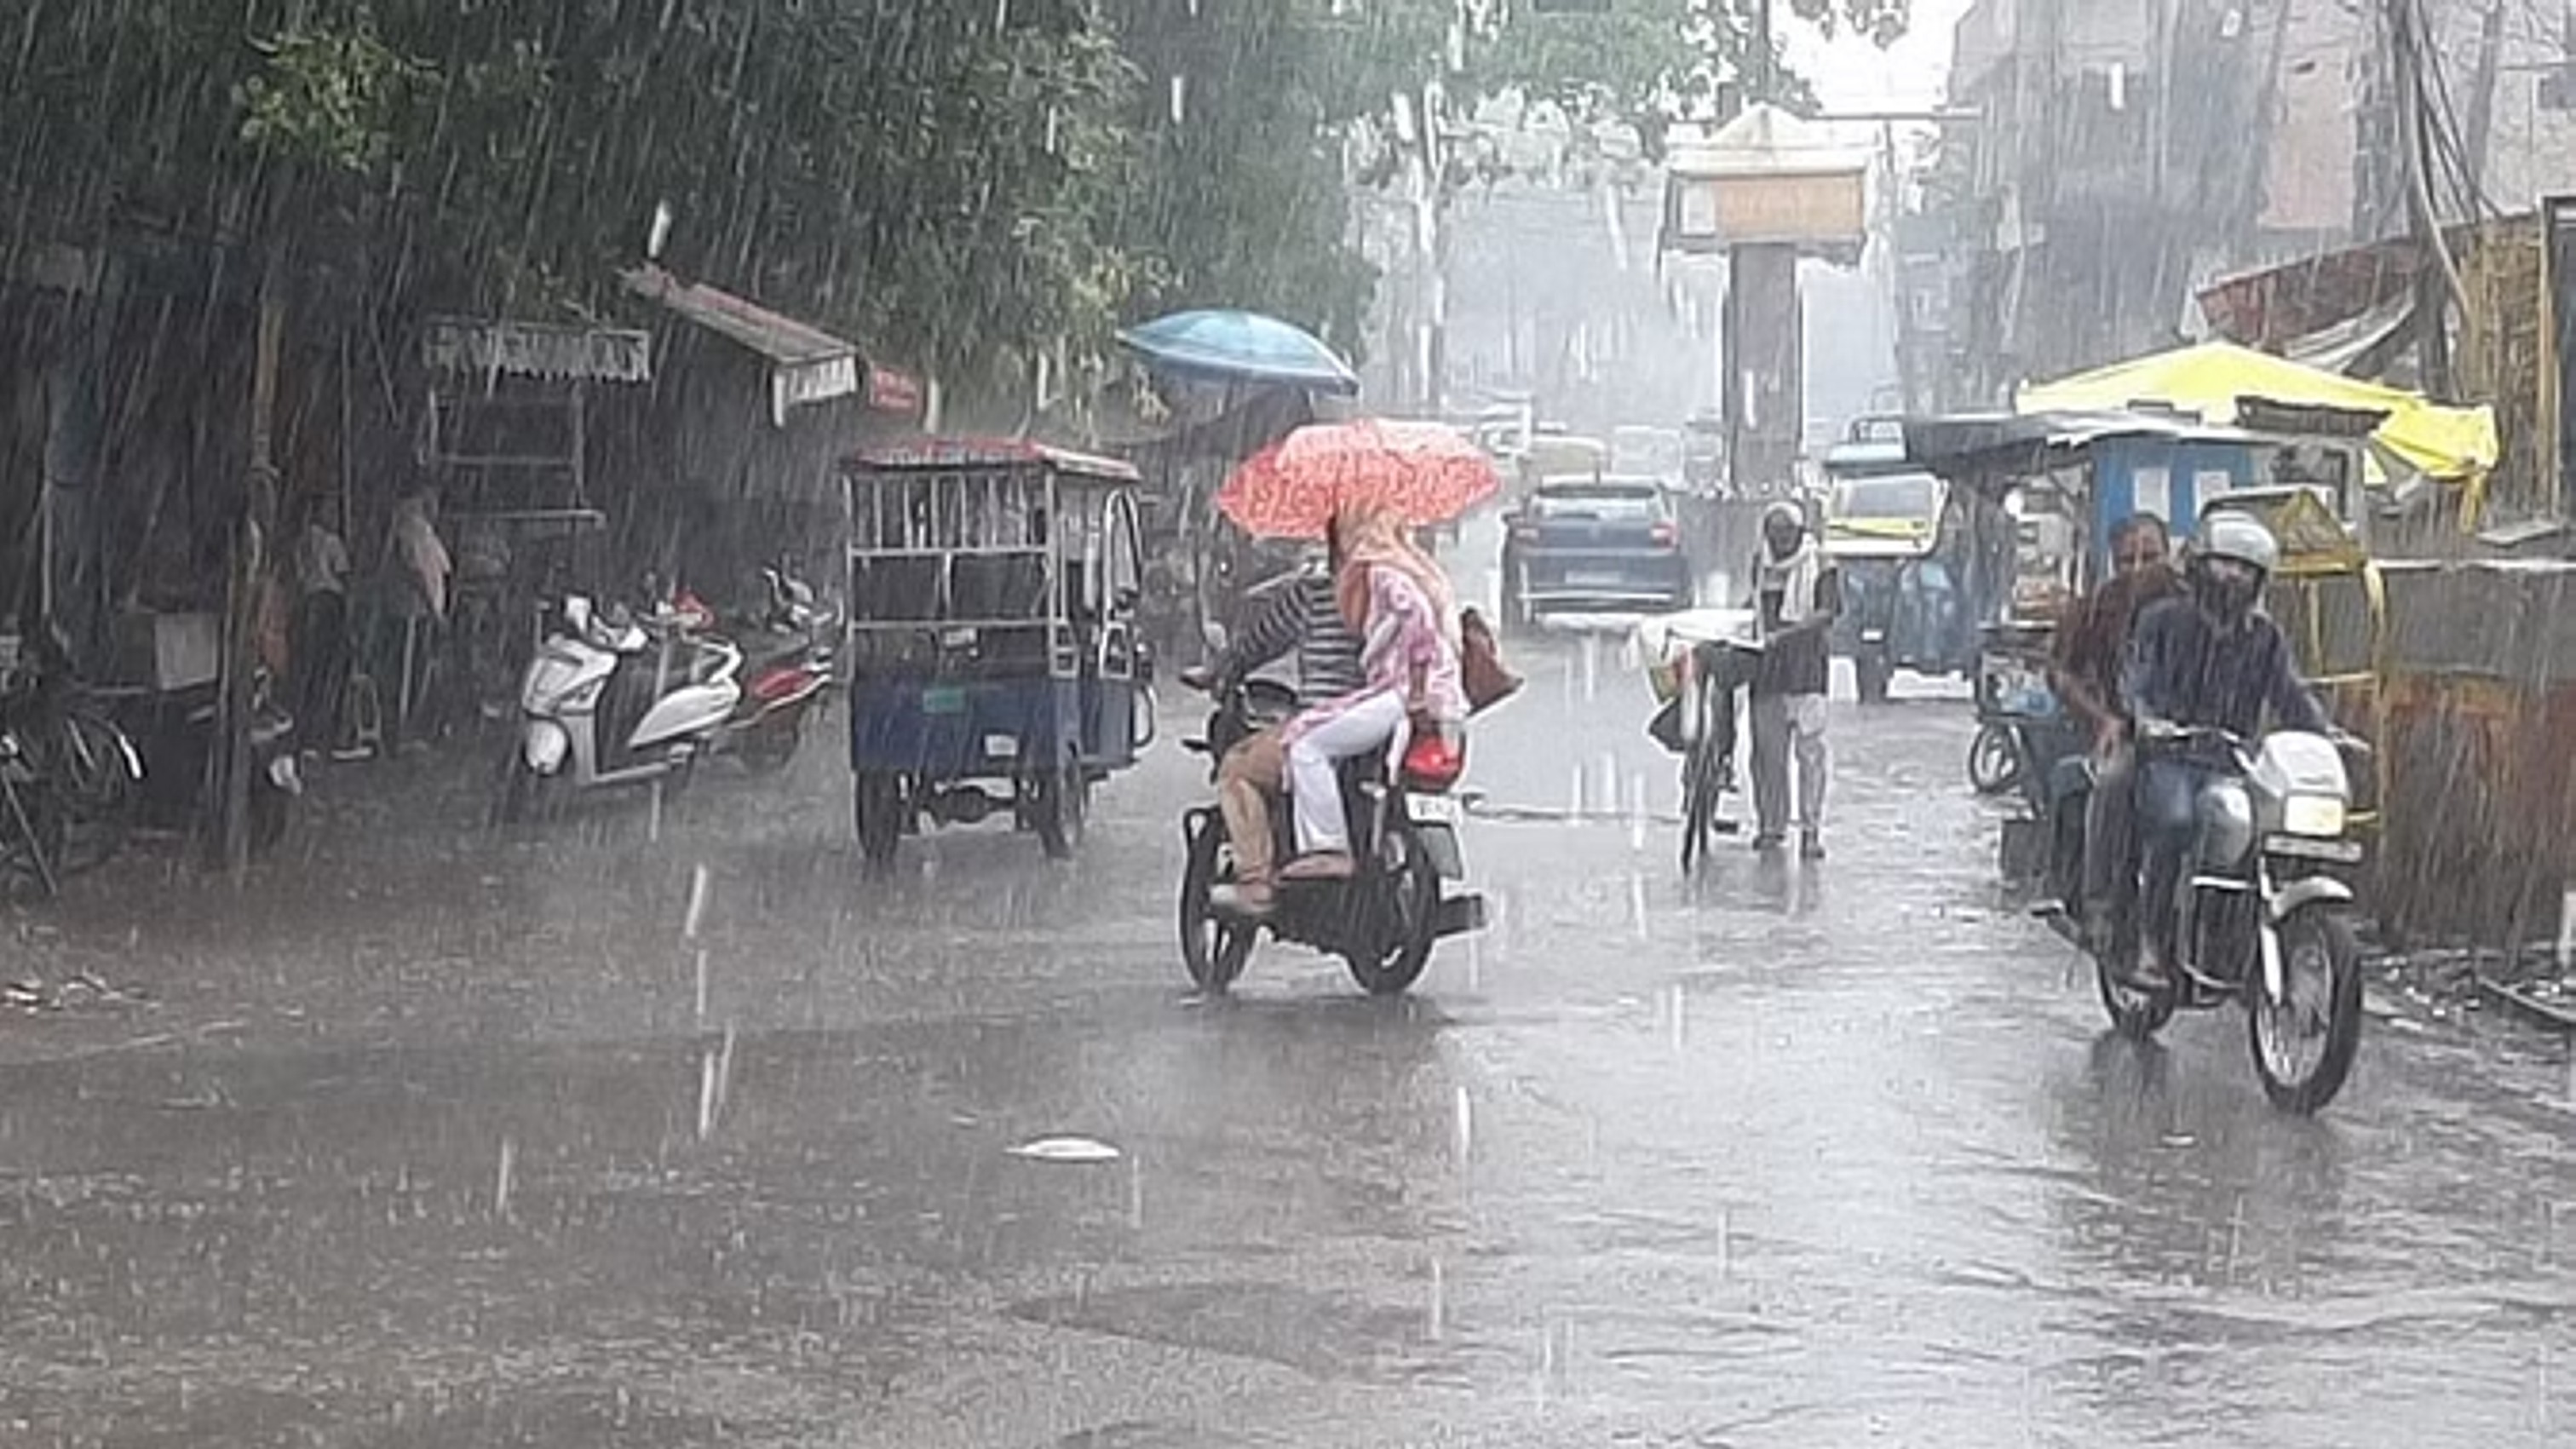 10 राज्यों में बारिश की चेतावनी, बिहार में सात नदियां उफनाईं; महाराष्ट्र में भी आफत